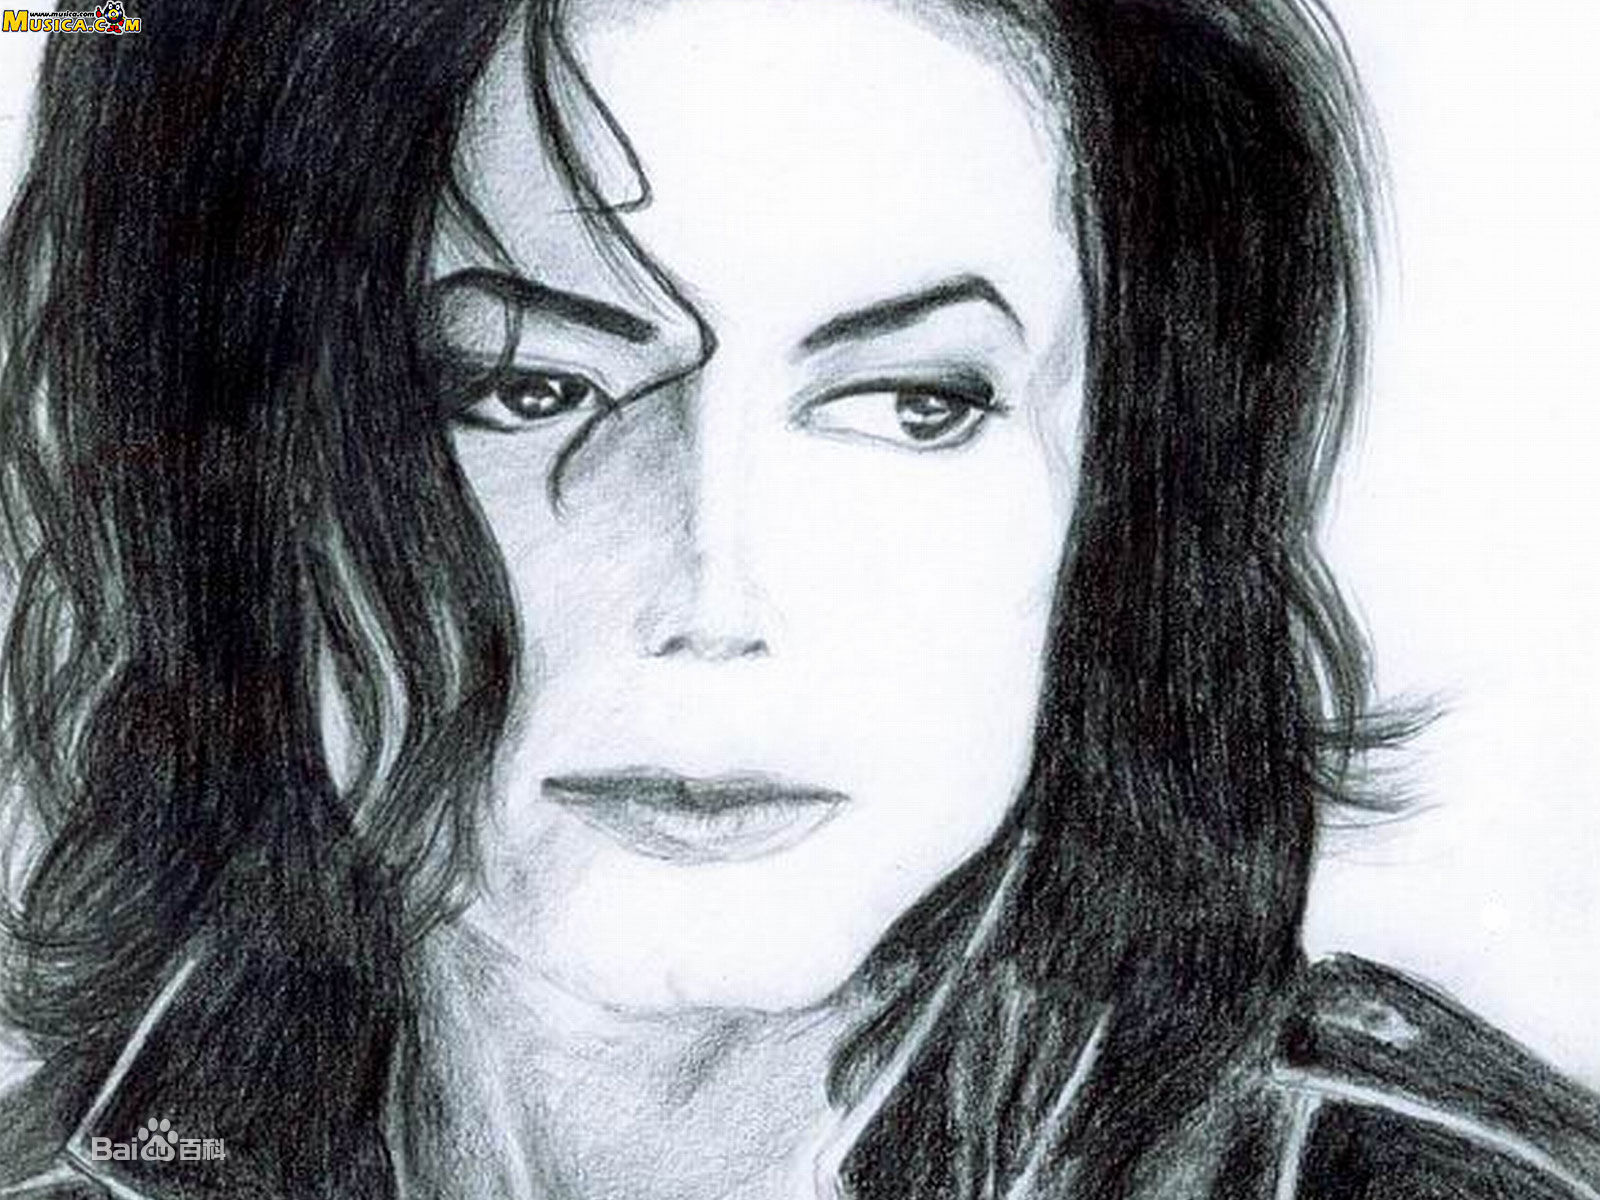 音乐史的变革先锋,世界上最伟大的艺术家——迈克尔·杰克逊